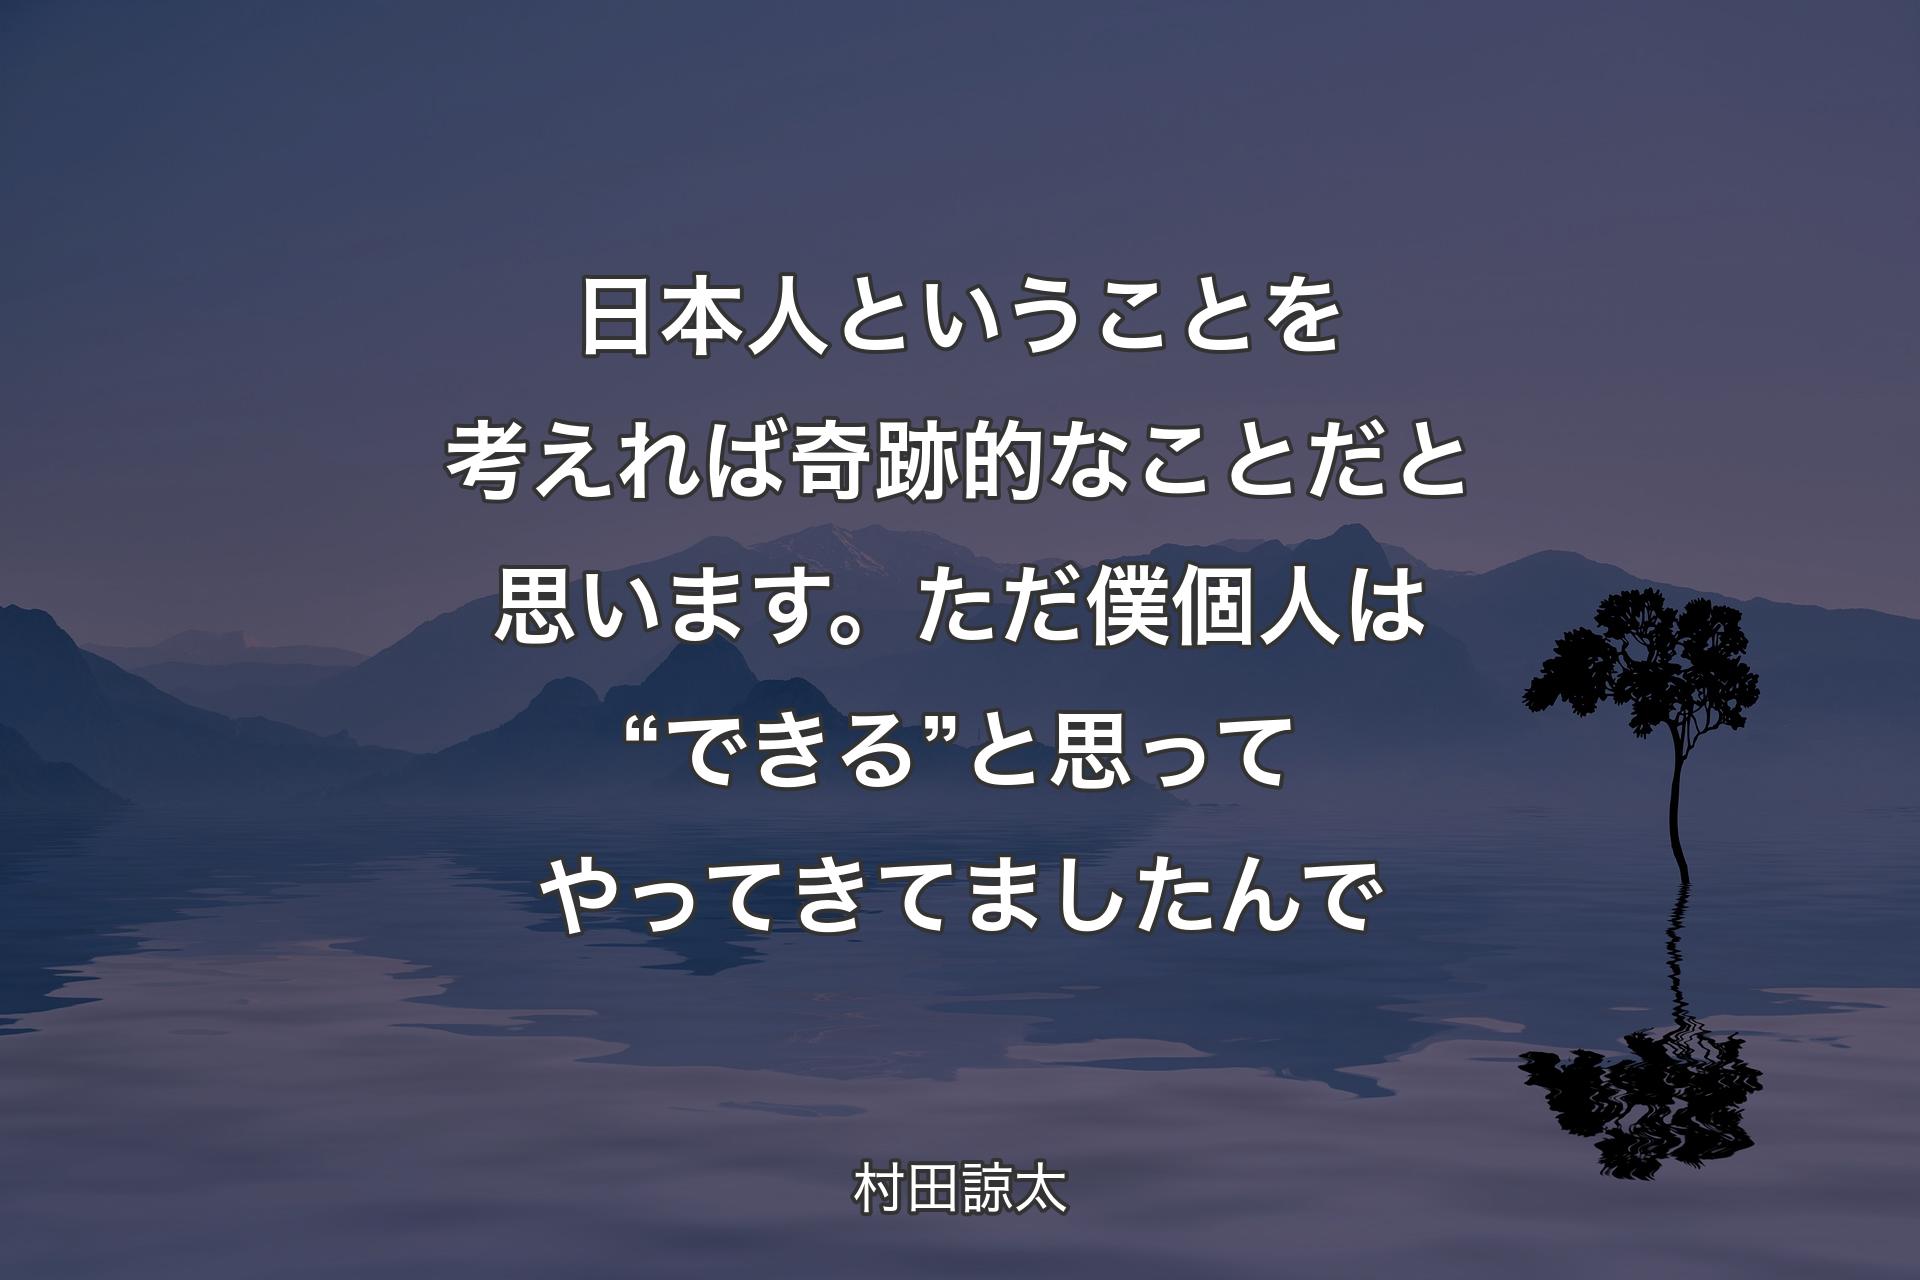 【背景4】日本人ということを考えれば奇跡的なことだと思います。ただ僕個人は“できる”と思ってやってきてましたんで - 村田諒太